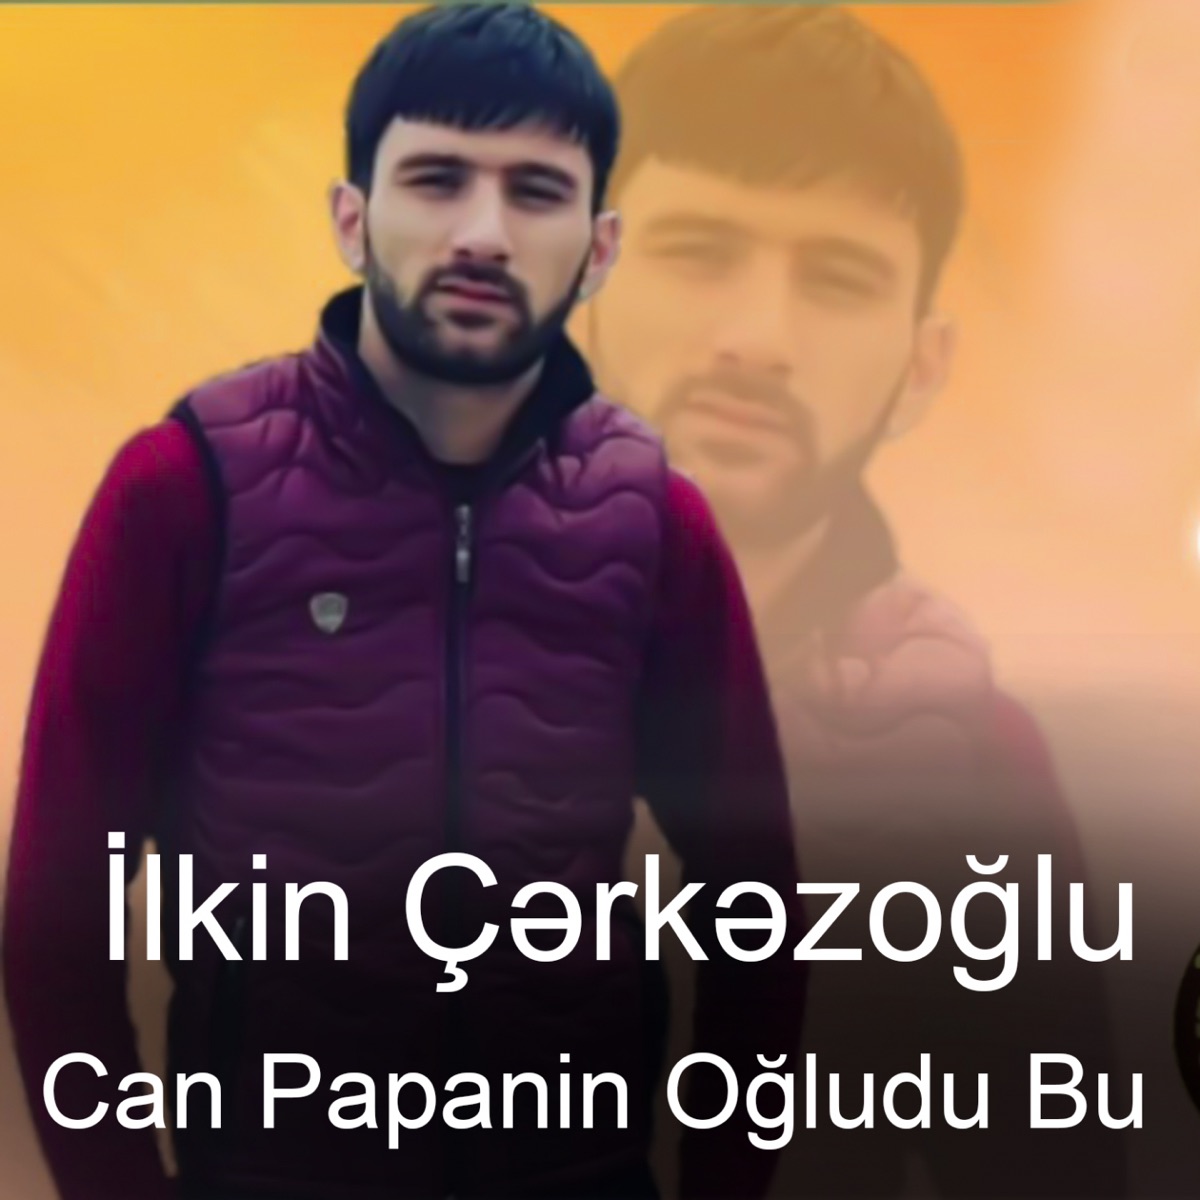 Can Papanin Ogludu Bu - Single by Ilkin Cerkezoglu on Apple Music